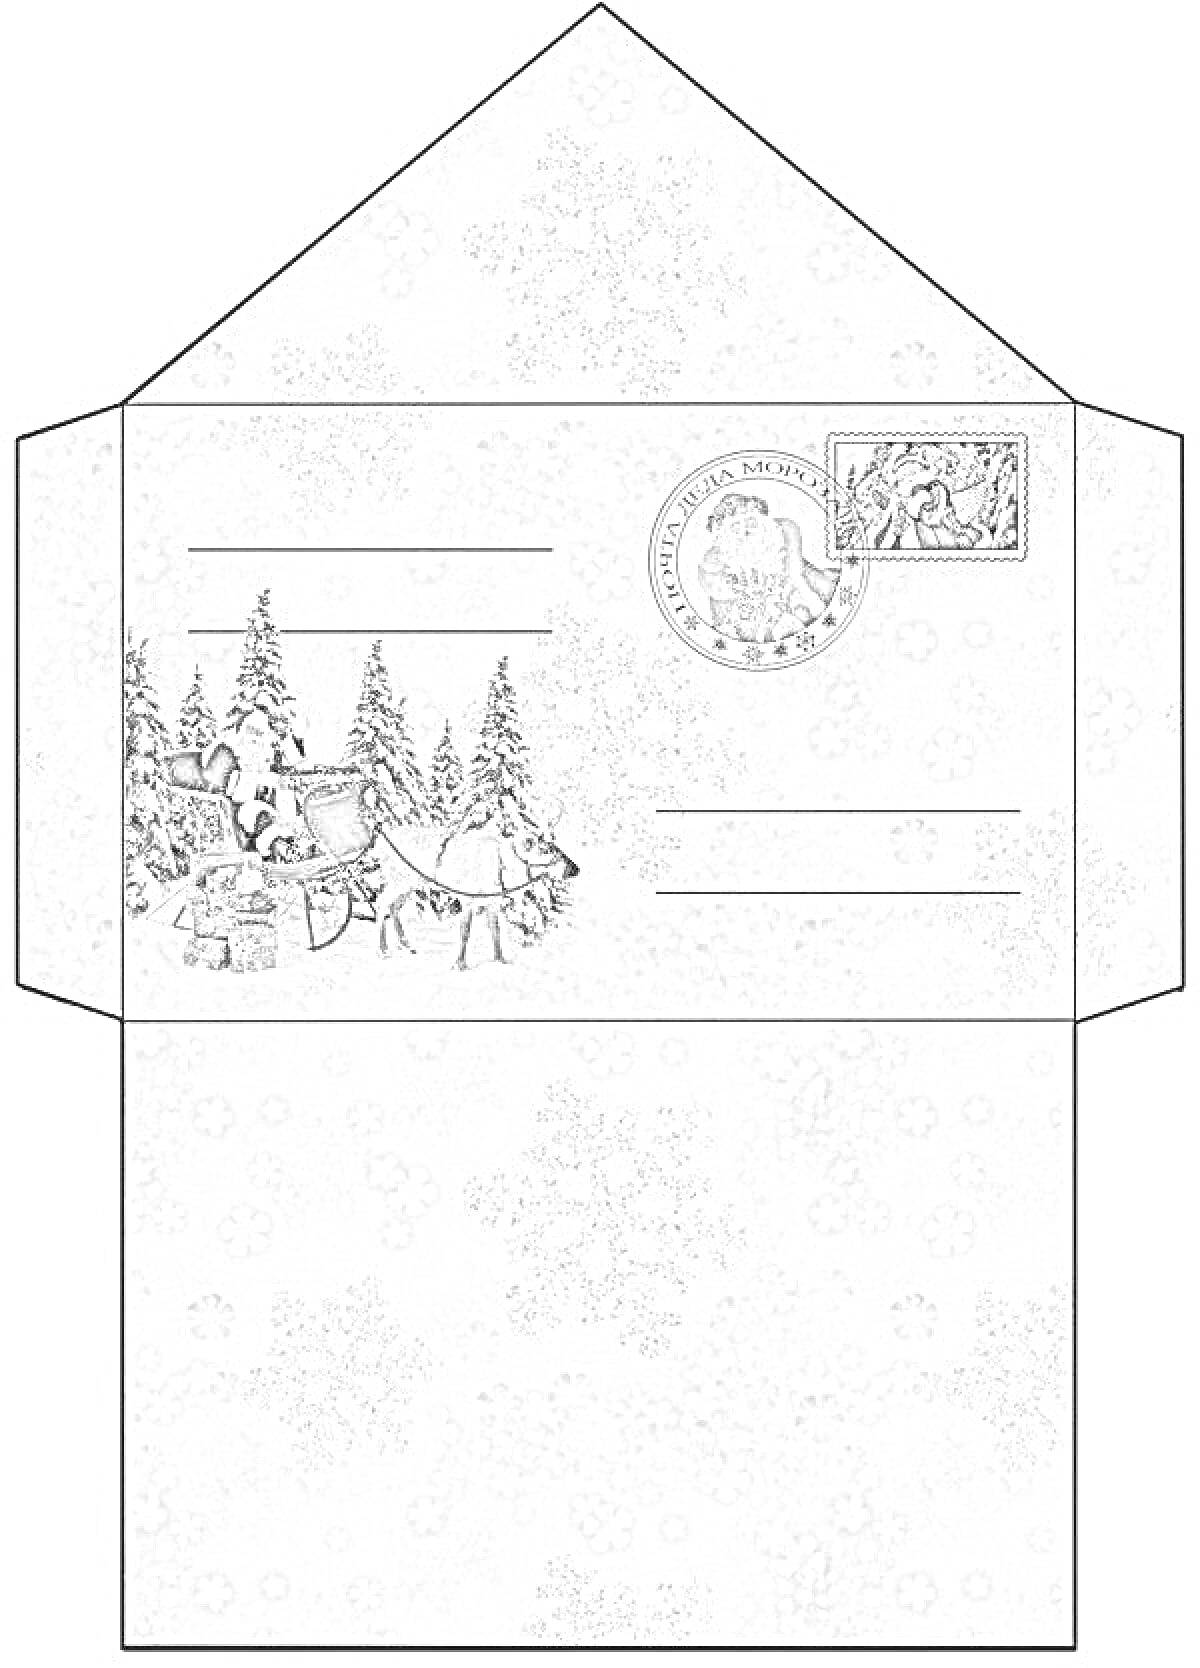 Раскраска Конверт для Деда Мороза с рисунком Санта-Клауса в санях, еловых деревьев, подарков, печати и снежинок